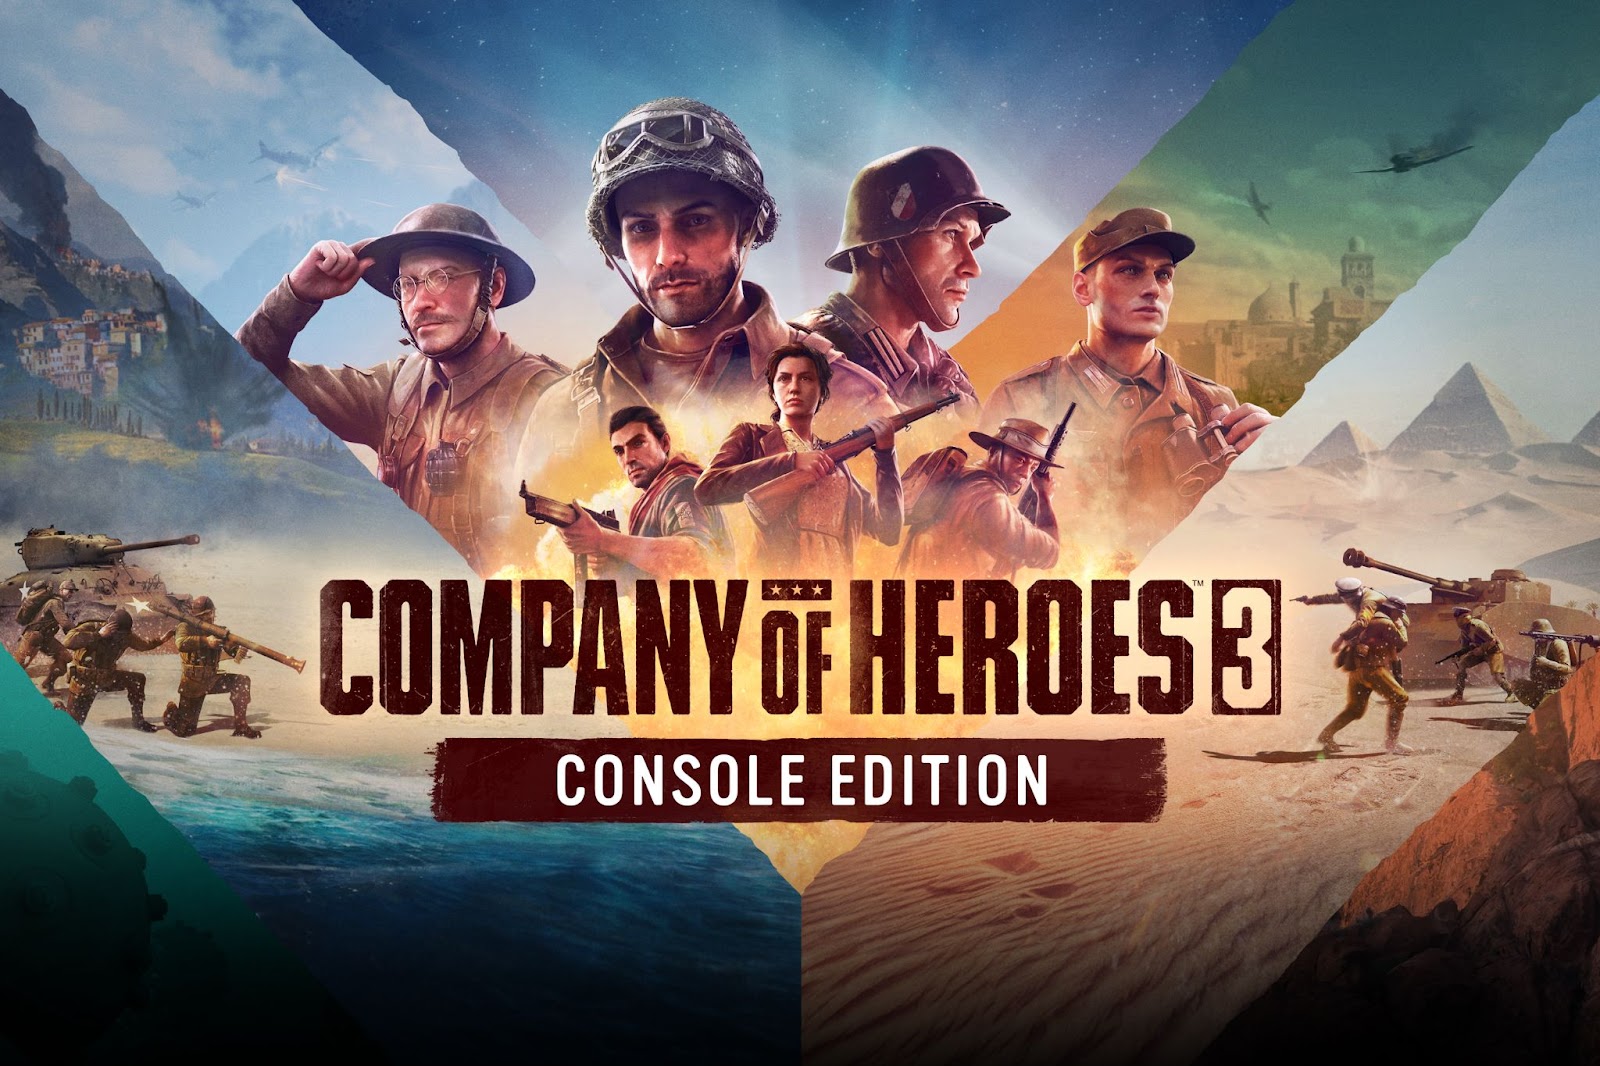 Coh3 console edition keyart landscape